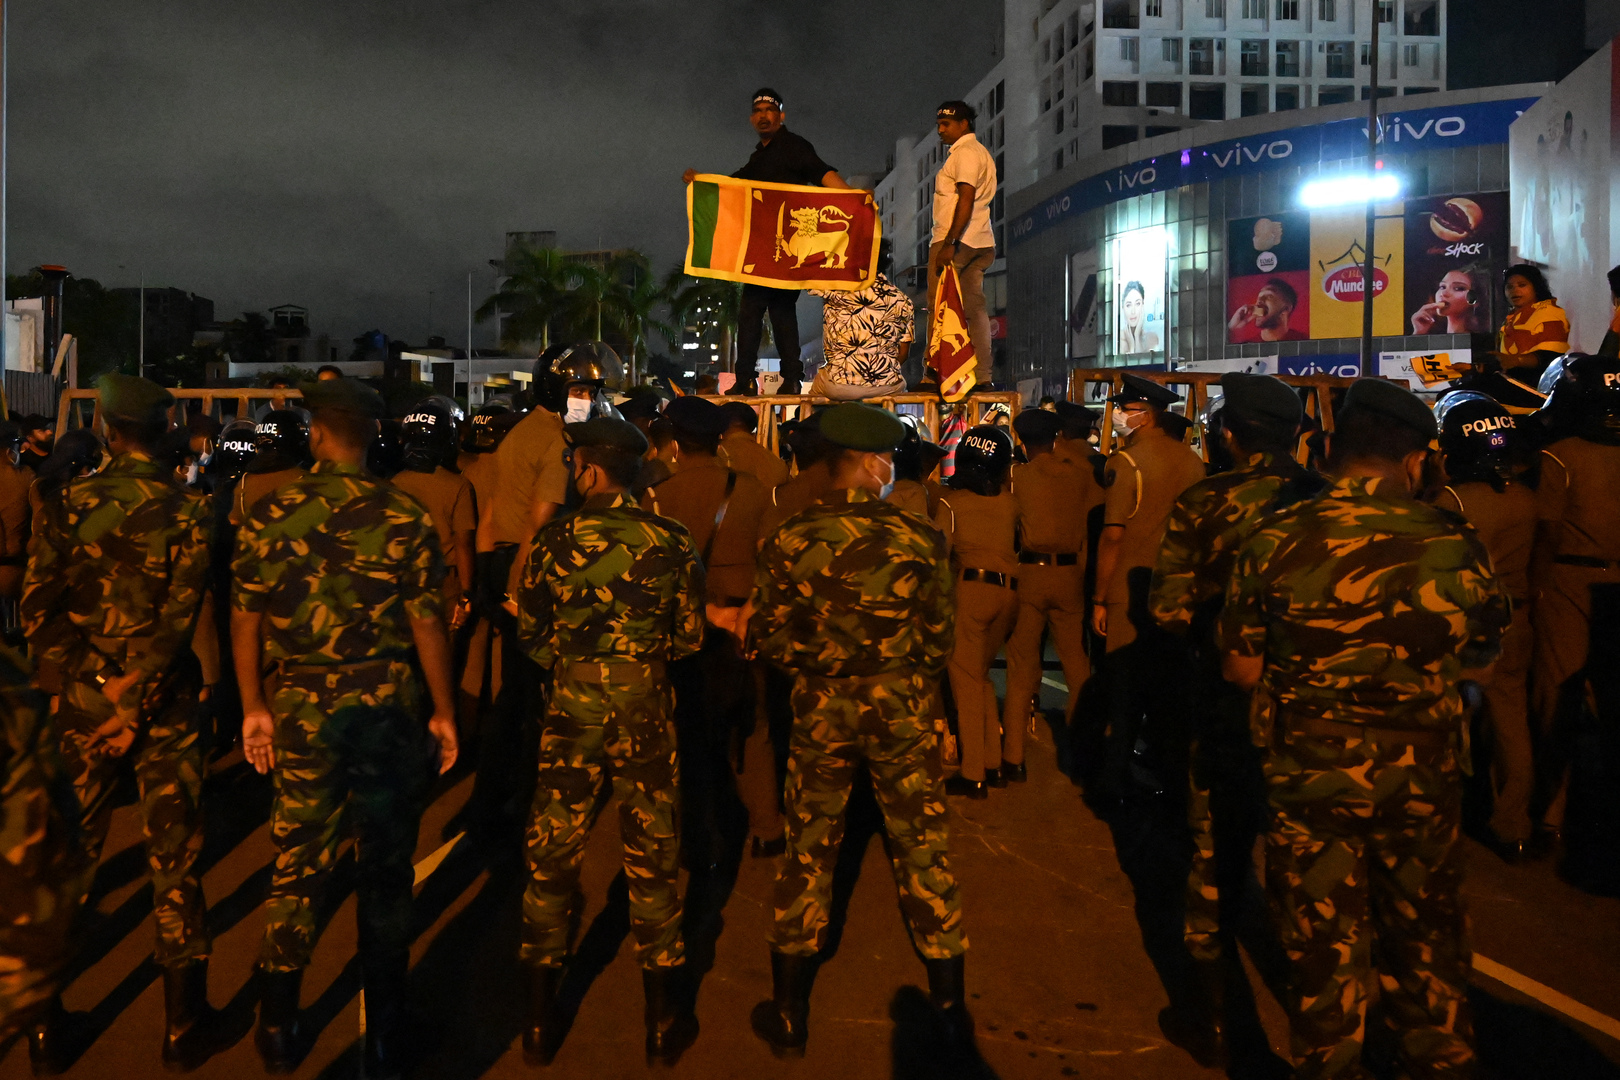 سلطات سريلانكا تأمر الشرطة باستخدام الذخيرة الحية لاحتواء أعمال الشغب